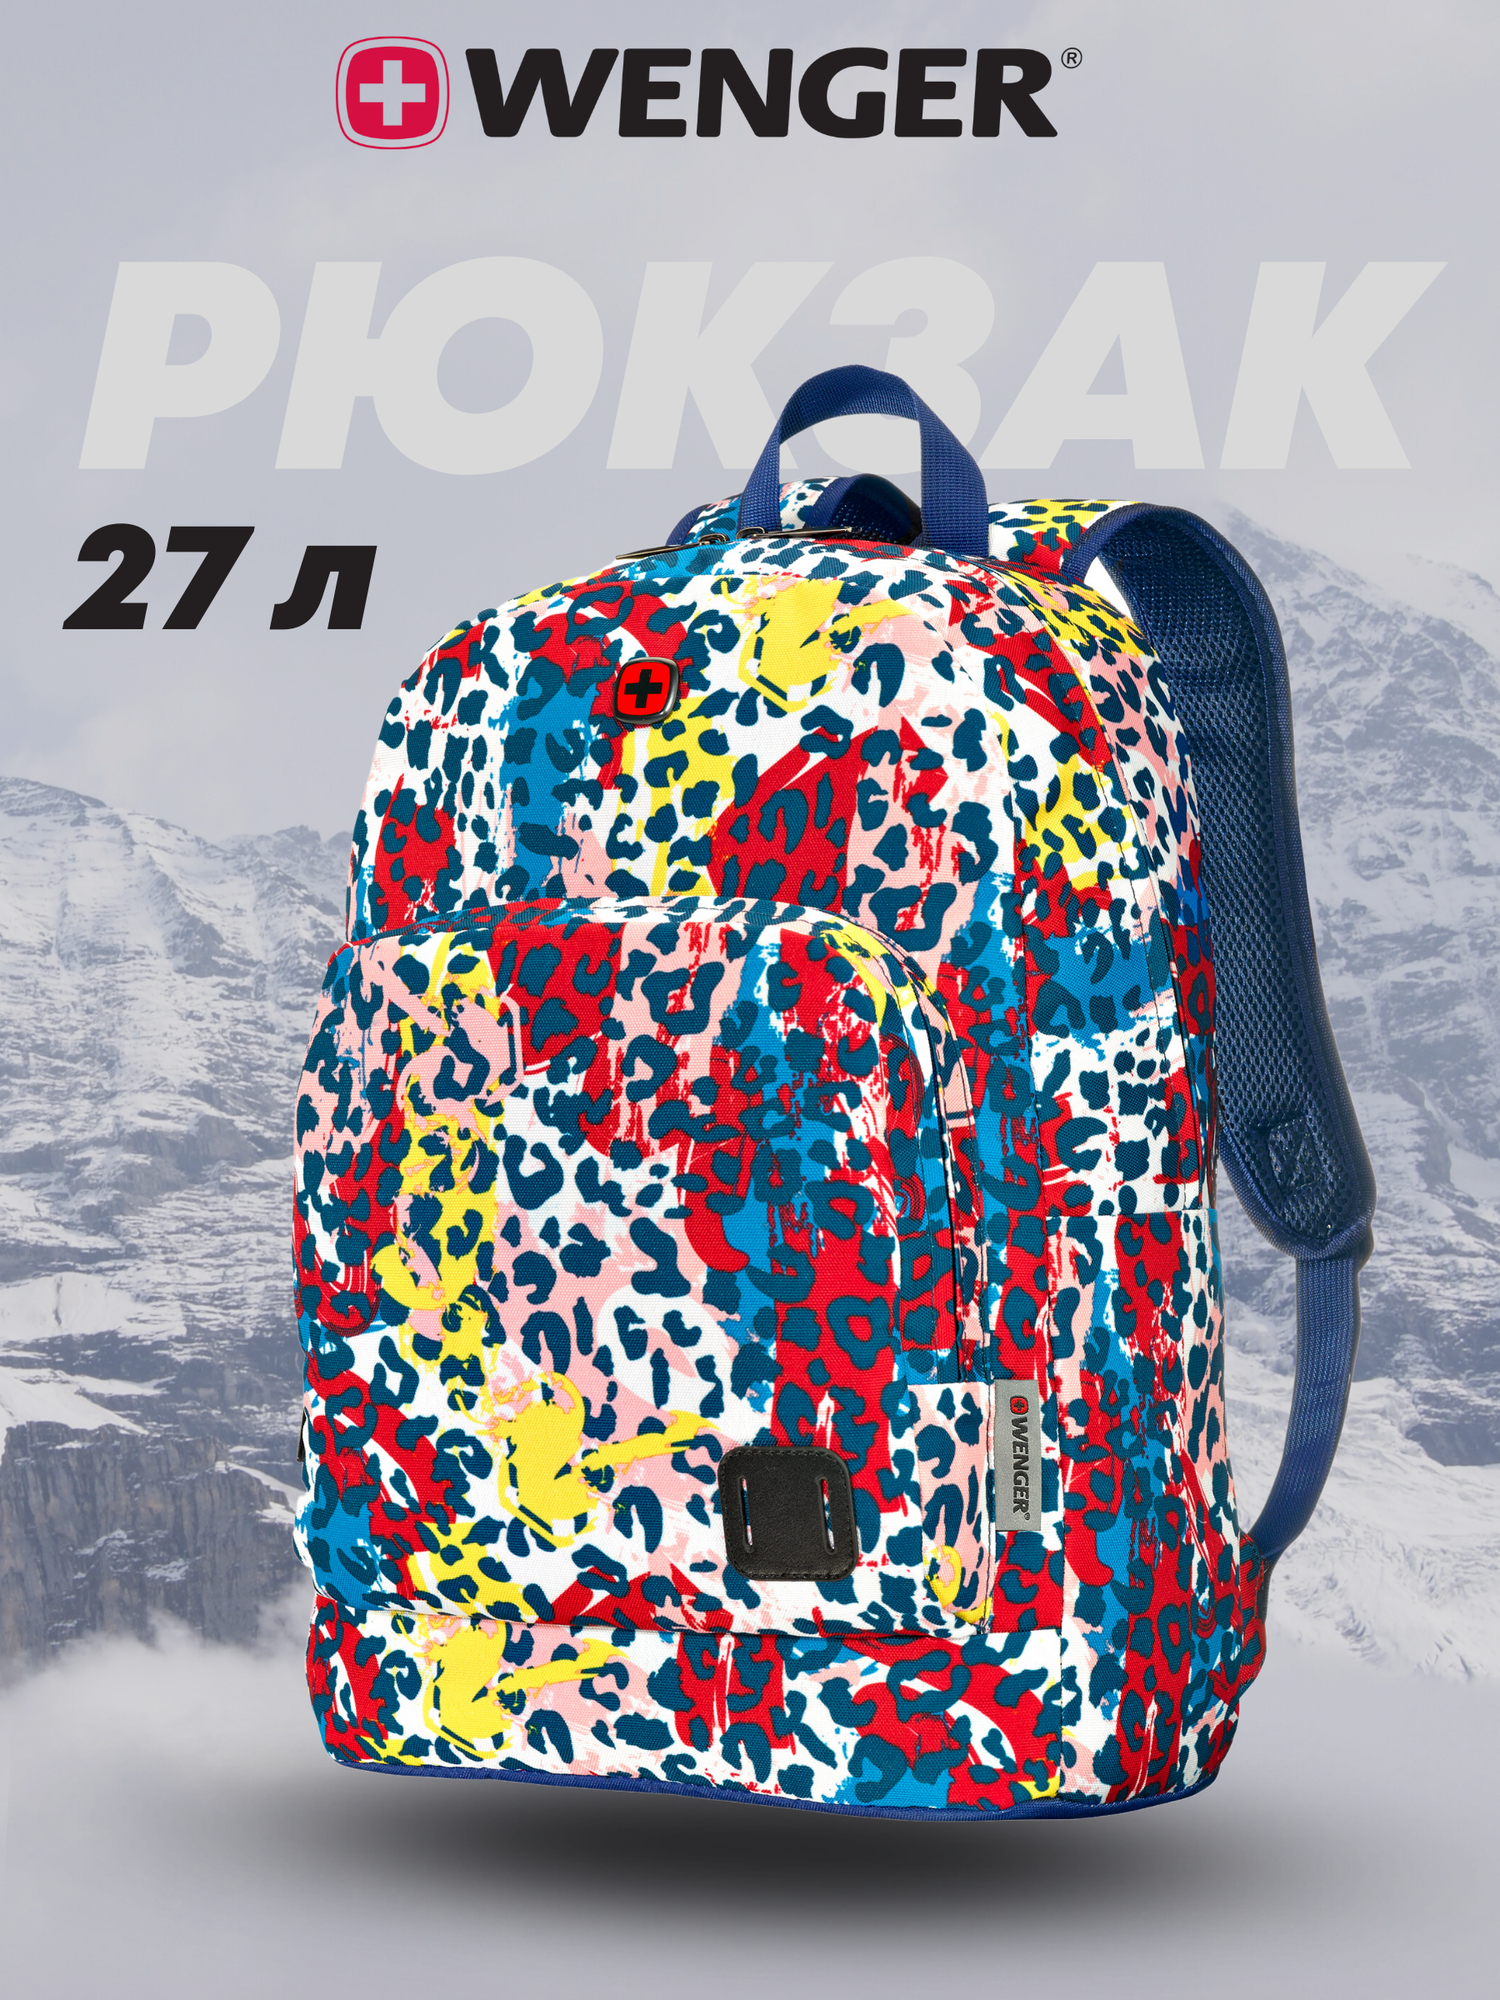 Городской рюкзак WENGER Crango 16', цветной с леопардовым принтом, полиэстер 600D, 33x22x46 см, 27 л